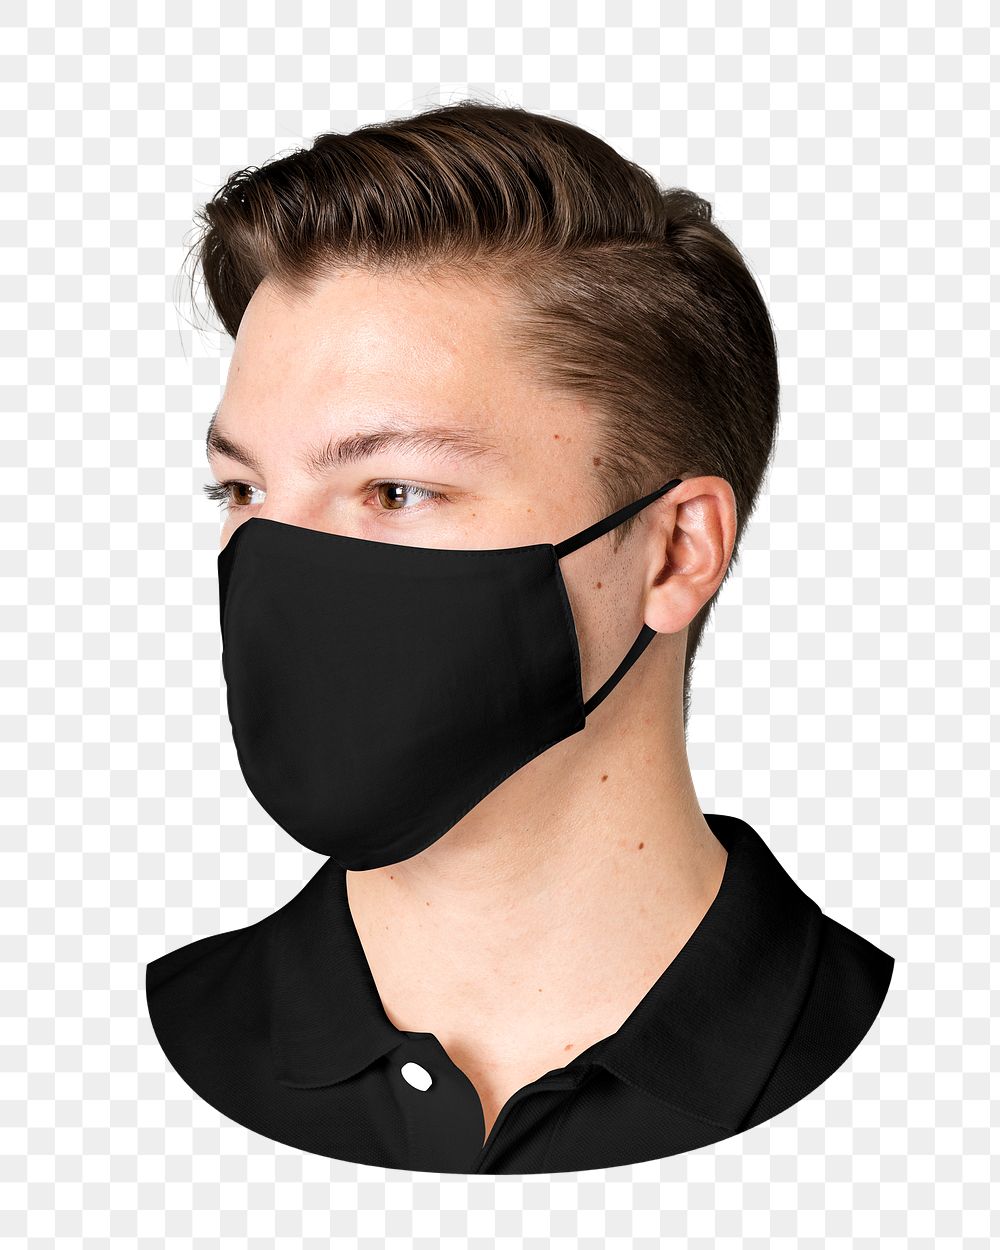 Png man in black mask, transparent background